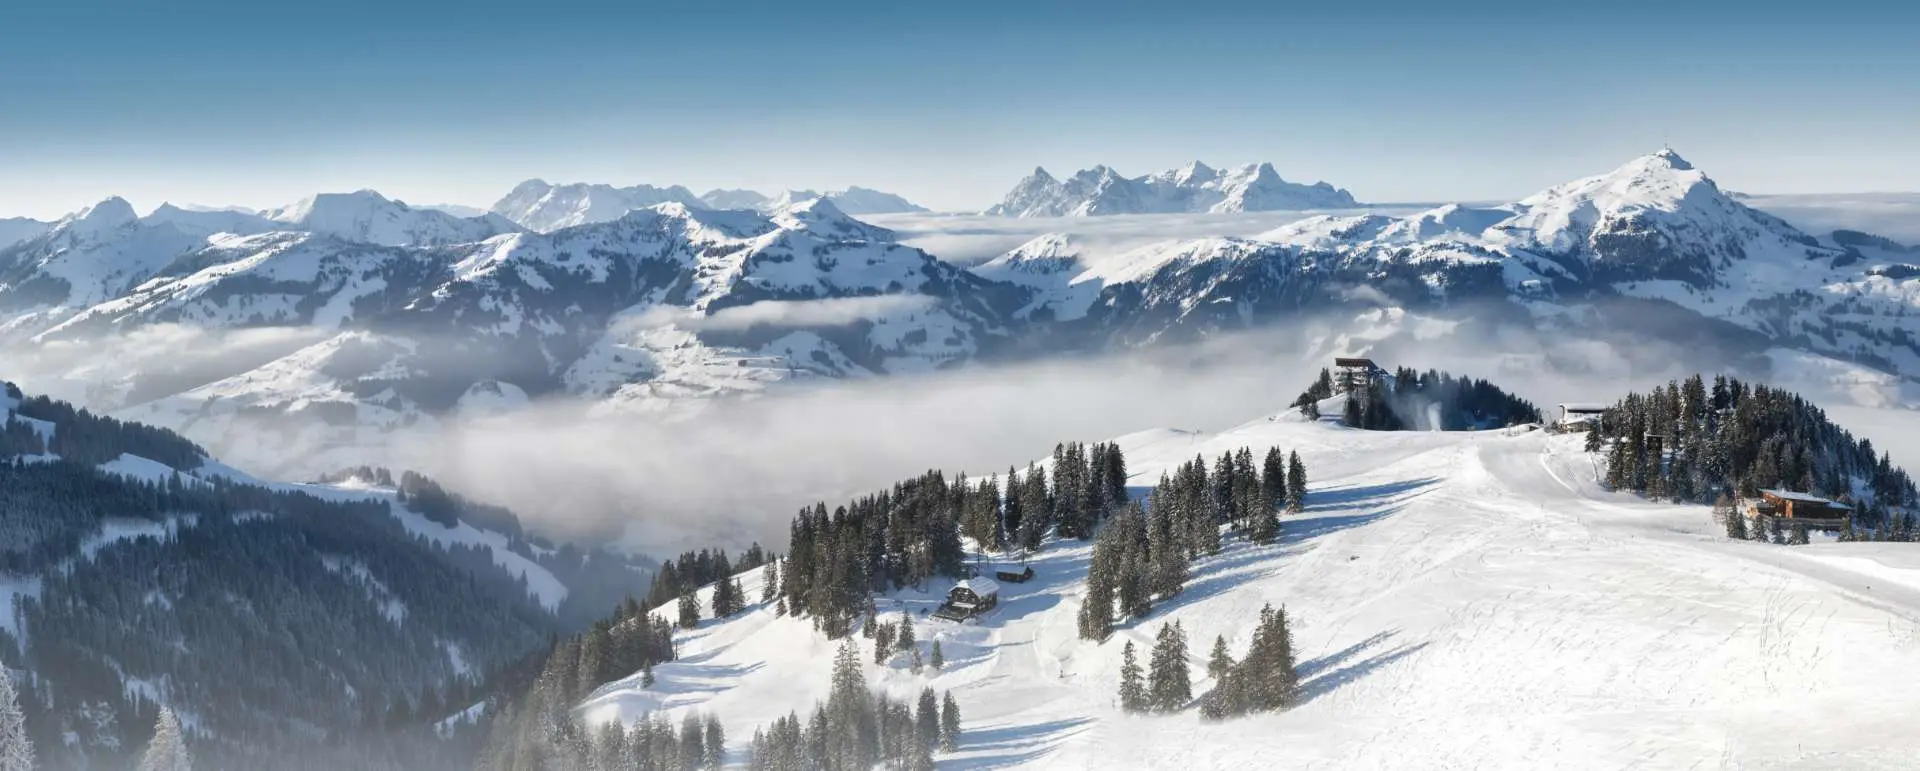 Kitzbüheler Alpen - das Reiseziel für Gruppen